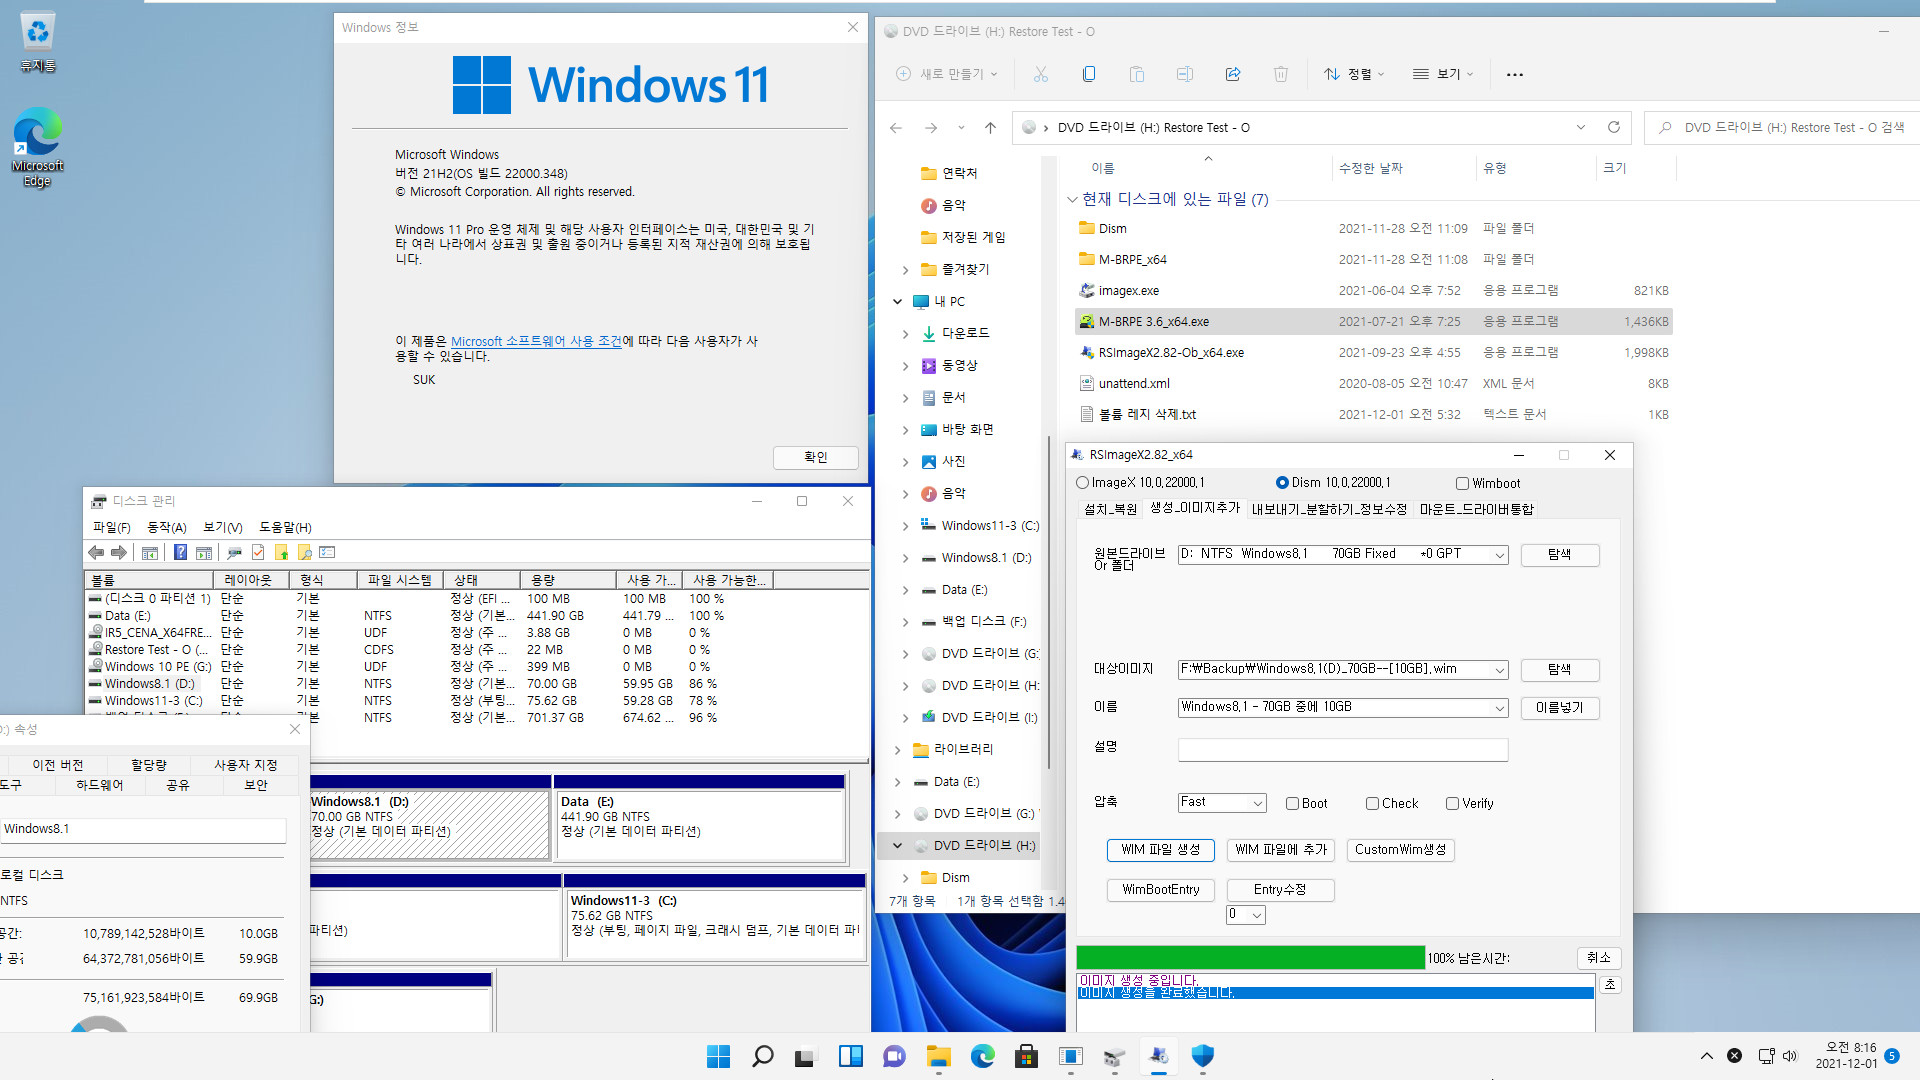 Windows 8.1은 여전히 같은 컴퓨터에서 다른 파티션에 복원하면 기존 윈도우와 복원한 윈도우 2개를 동시에 사용하는군요. 기존 C드라이브 문자만 삭제하면 정상 부팅됩니다 2021-12-01_081601.jpg